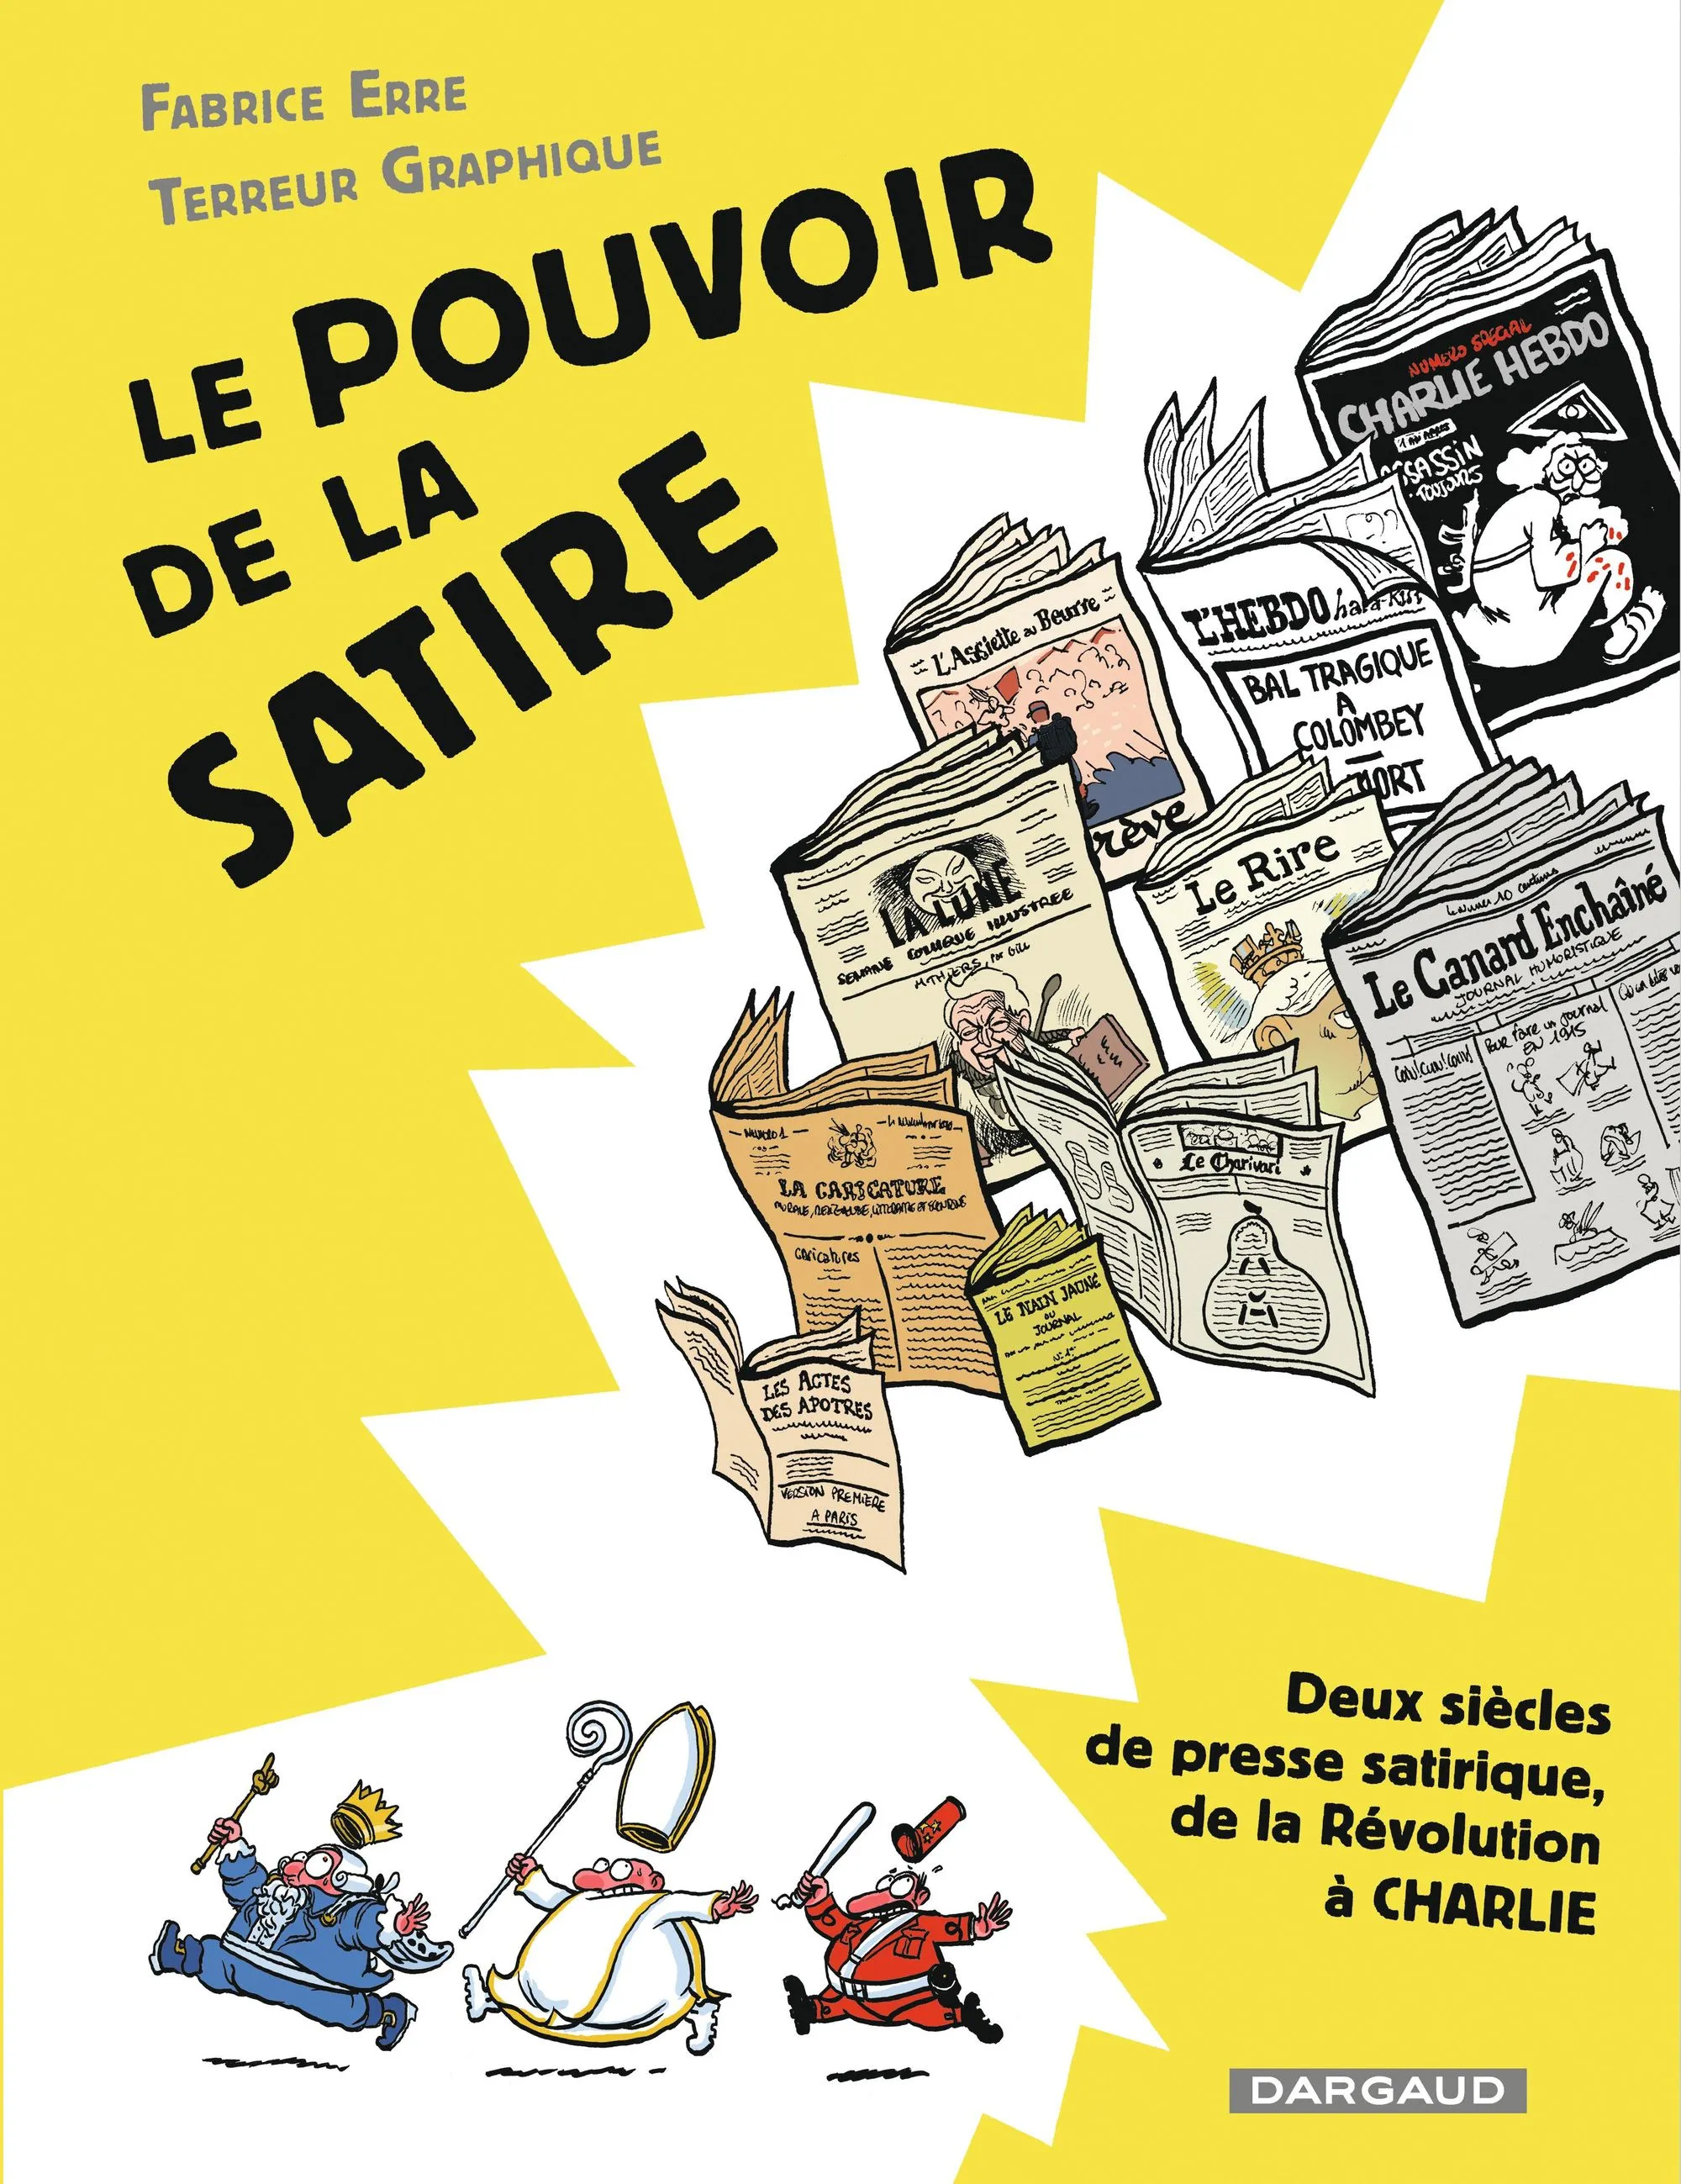 Fabrice Erre, Terreur Graphique, Le Pouvoir de la satire, 2018, Éditions Dargaud.